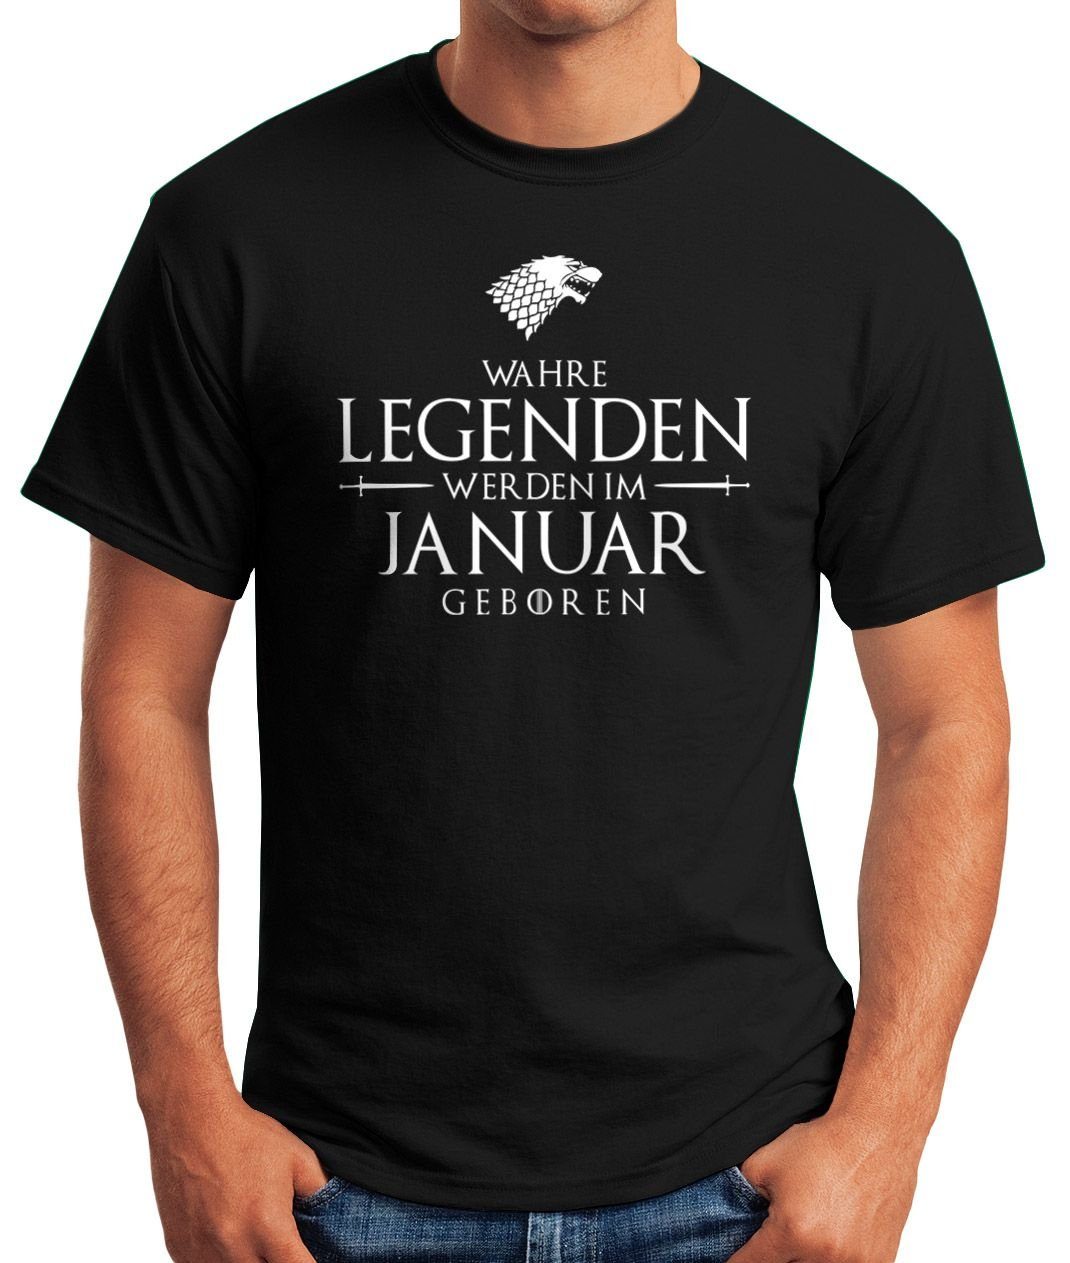 Legenden im Moonworks® [object Herren Fun-Shirt Print geboren Januar werden schwarz T-Shirt mit Print-Shirt MoonWorks Wahre Object]